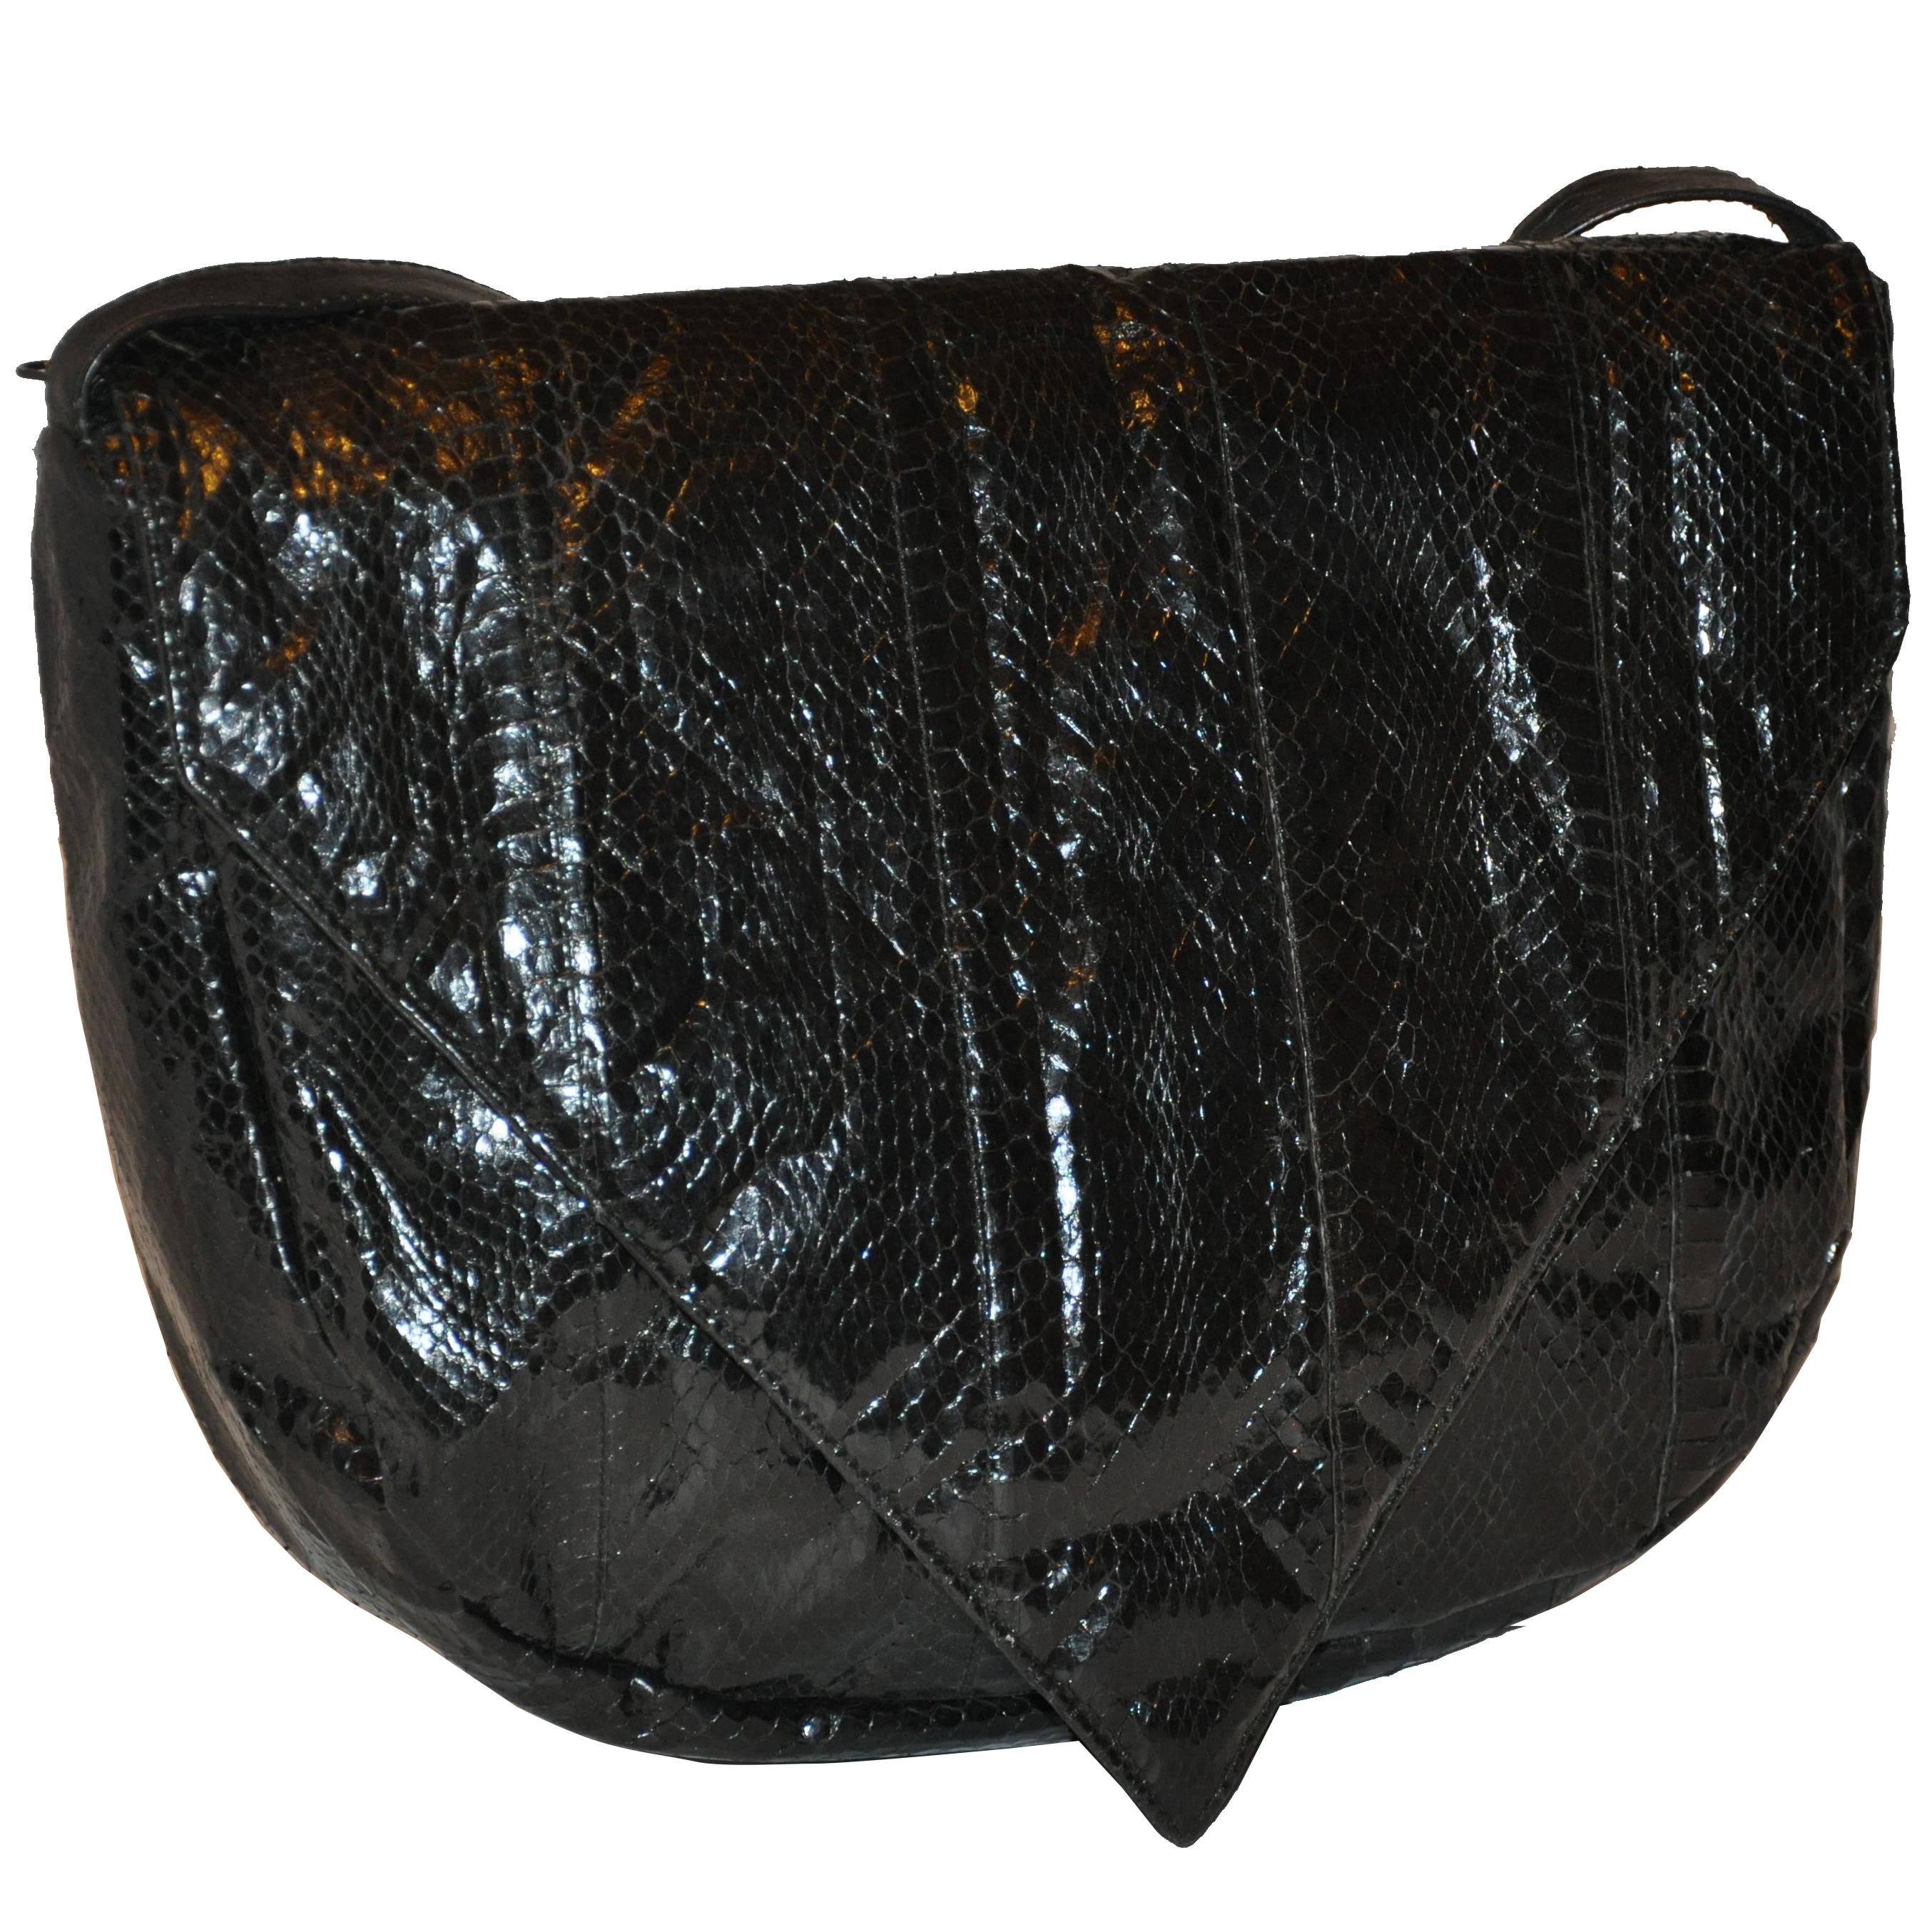 Huge Black Snakeskin with Black Calfskin Accent "Flap-Over" Shoulder Bag